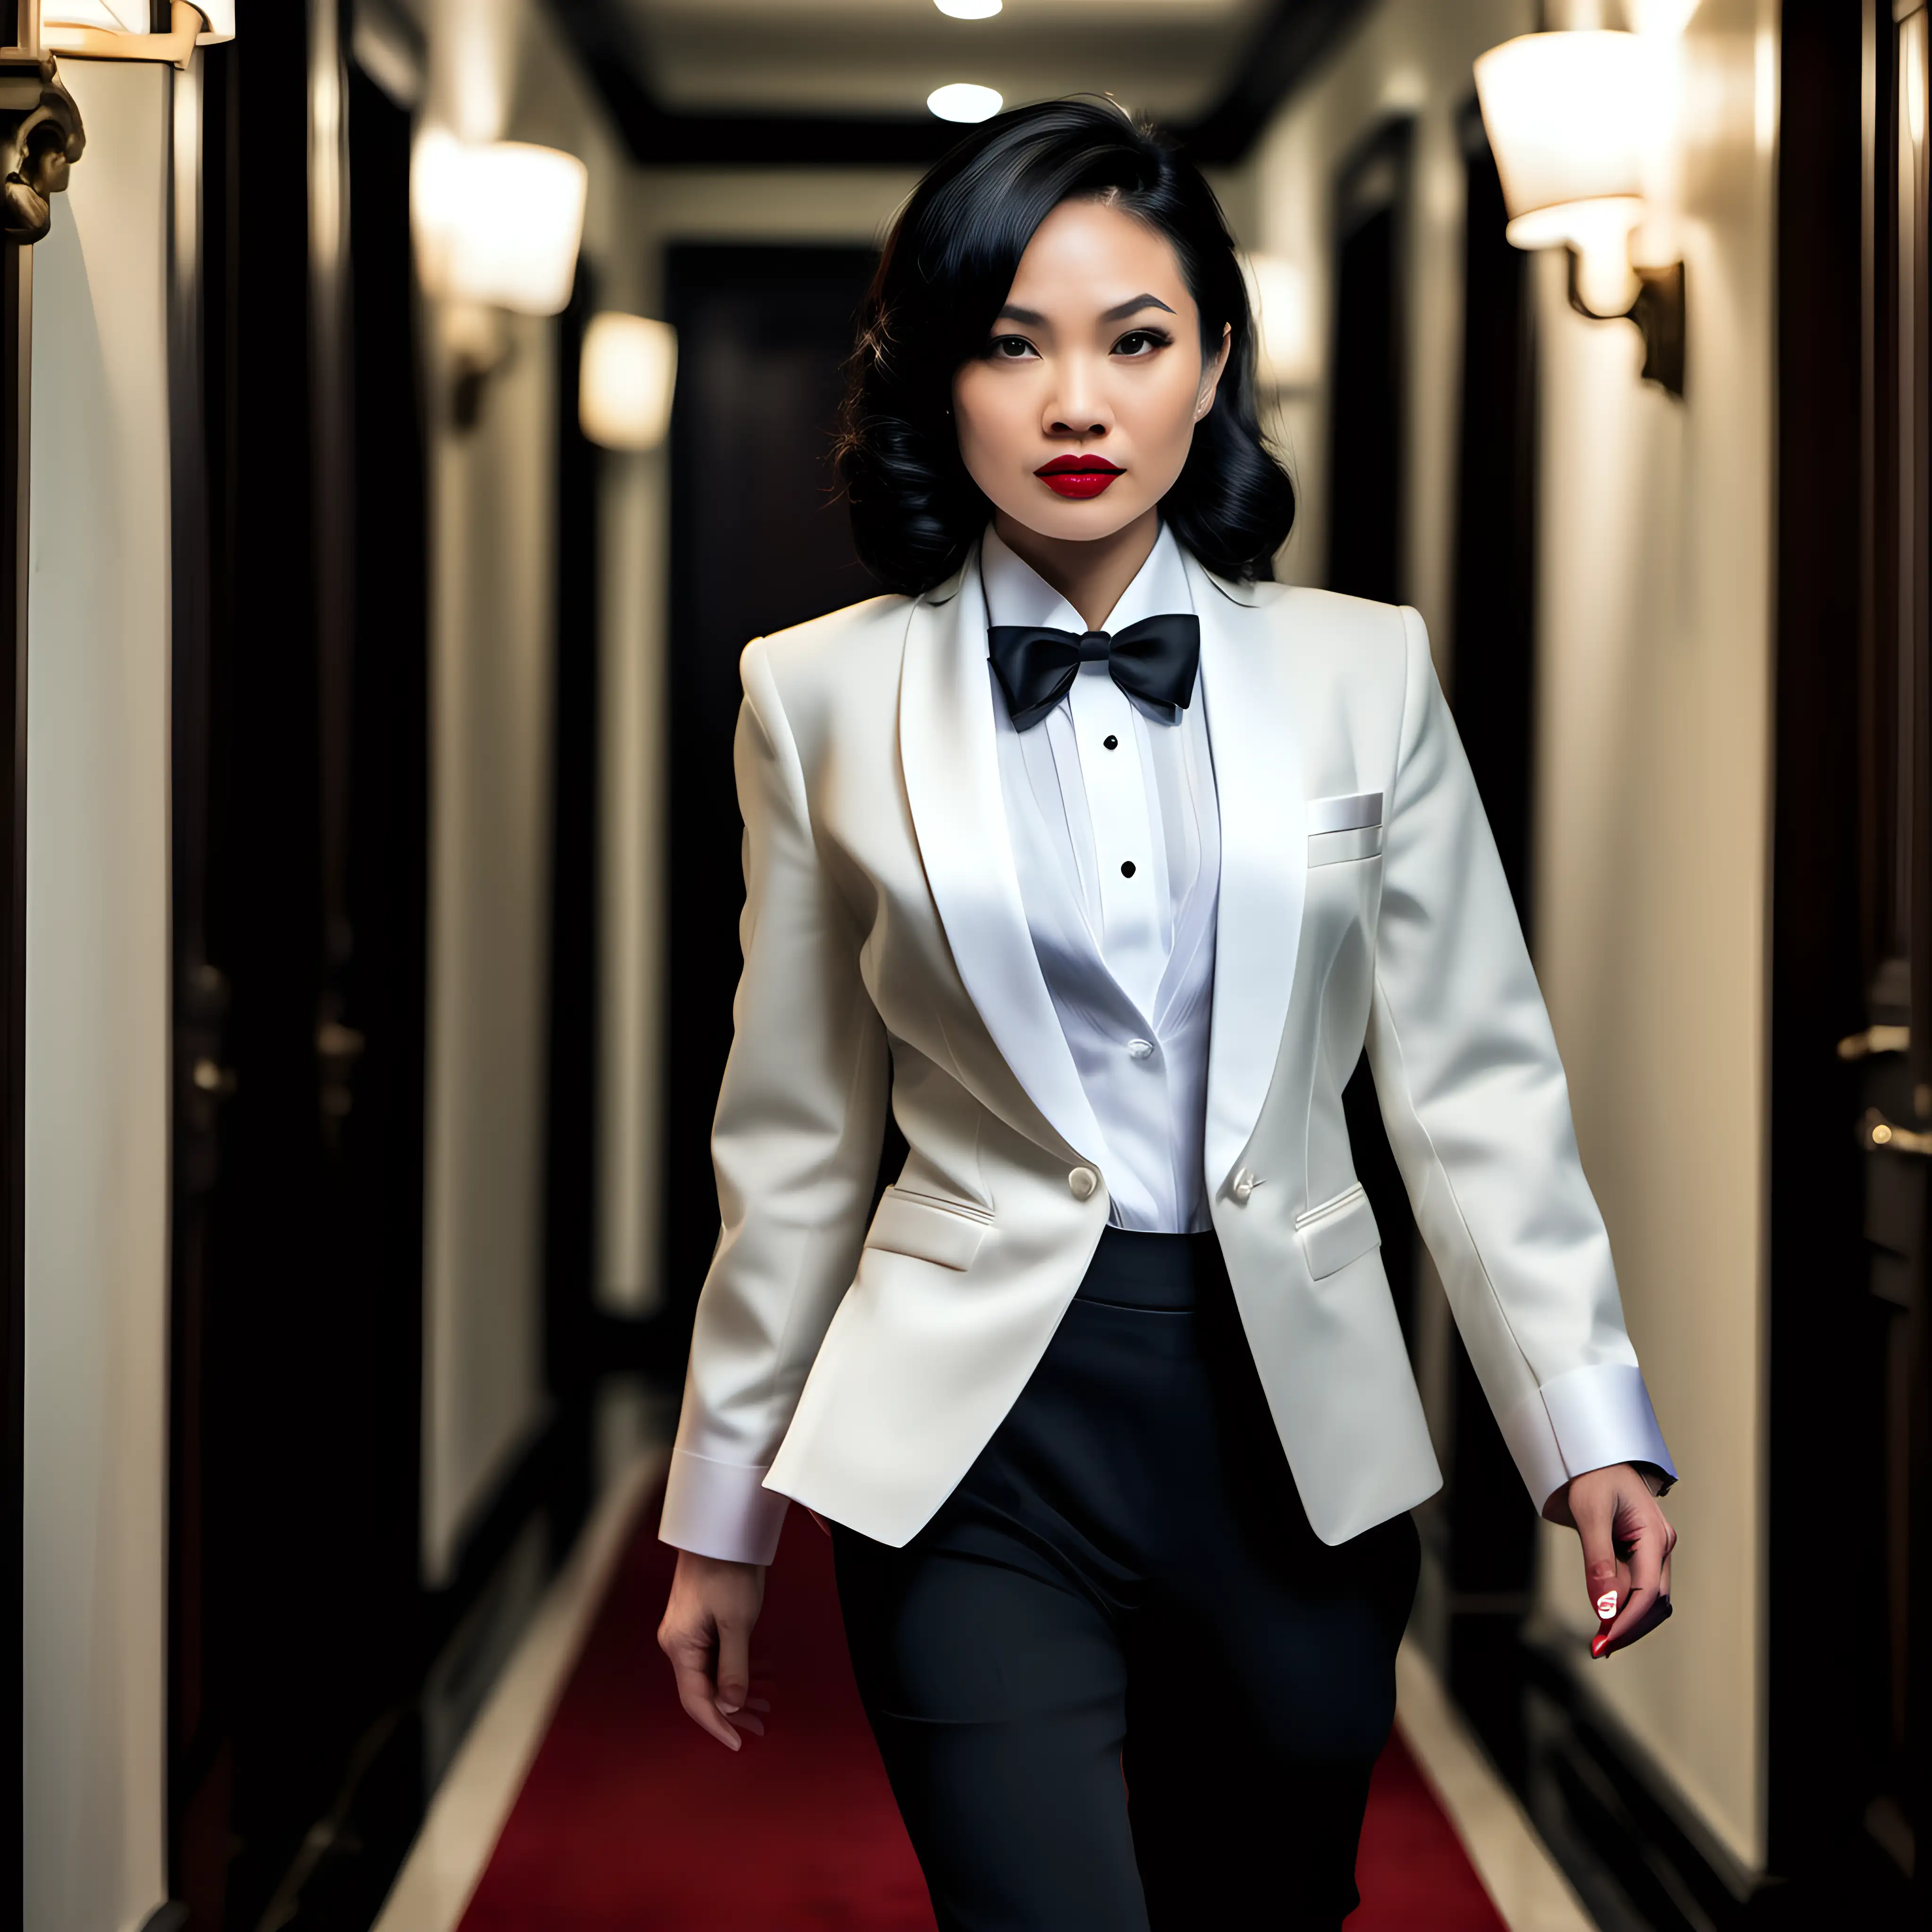 Elegant-Vietnamese-Woman-in-Ivory-Dinner-Jacket-Walking-Through-Mansion